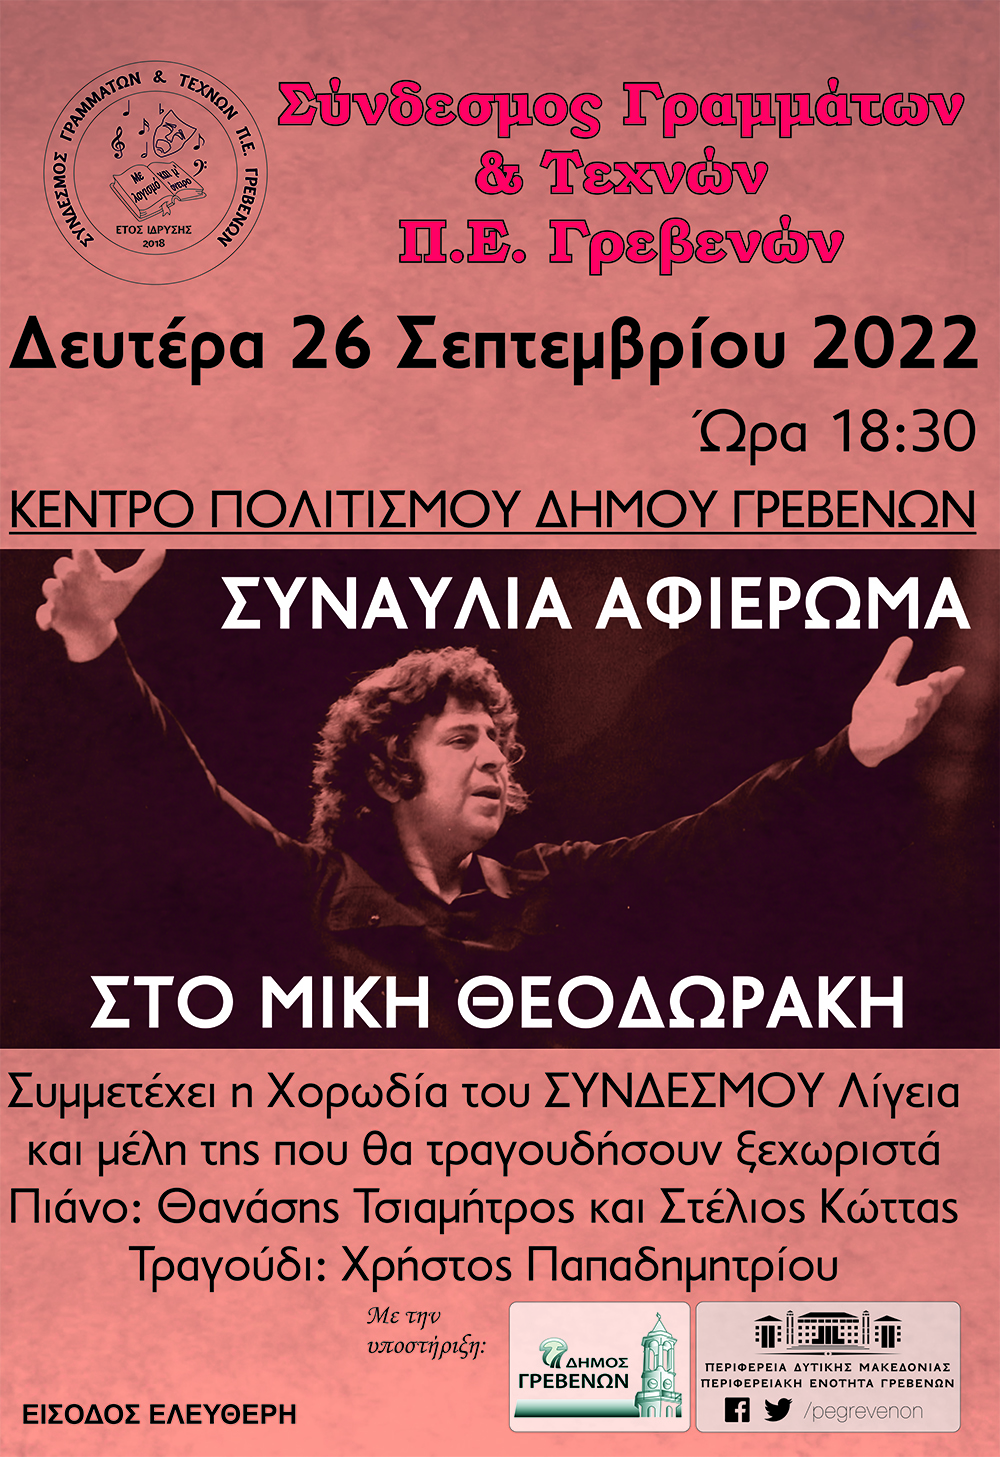 Αφιέρωμα στον μεγάλο Έλληνα μουσικοσυνθέτη Μίκη Θεοδωράκη